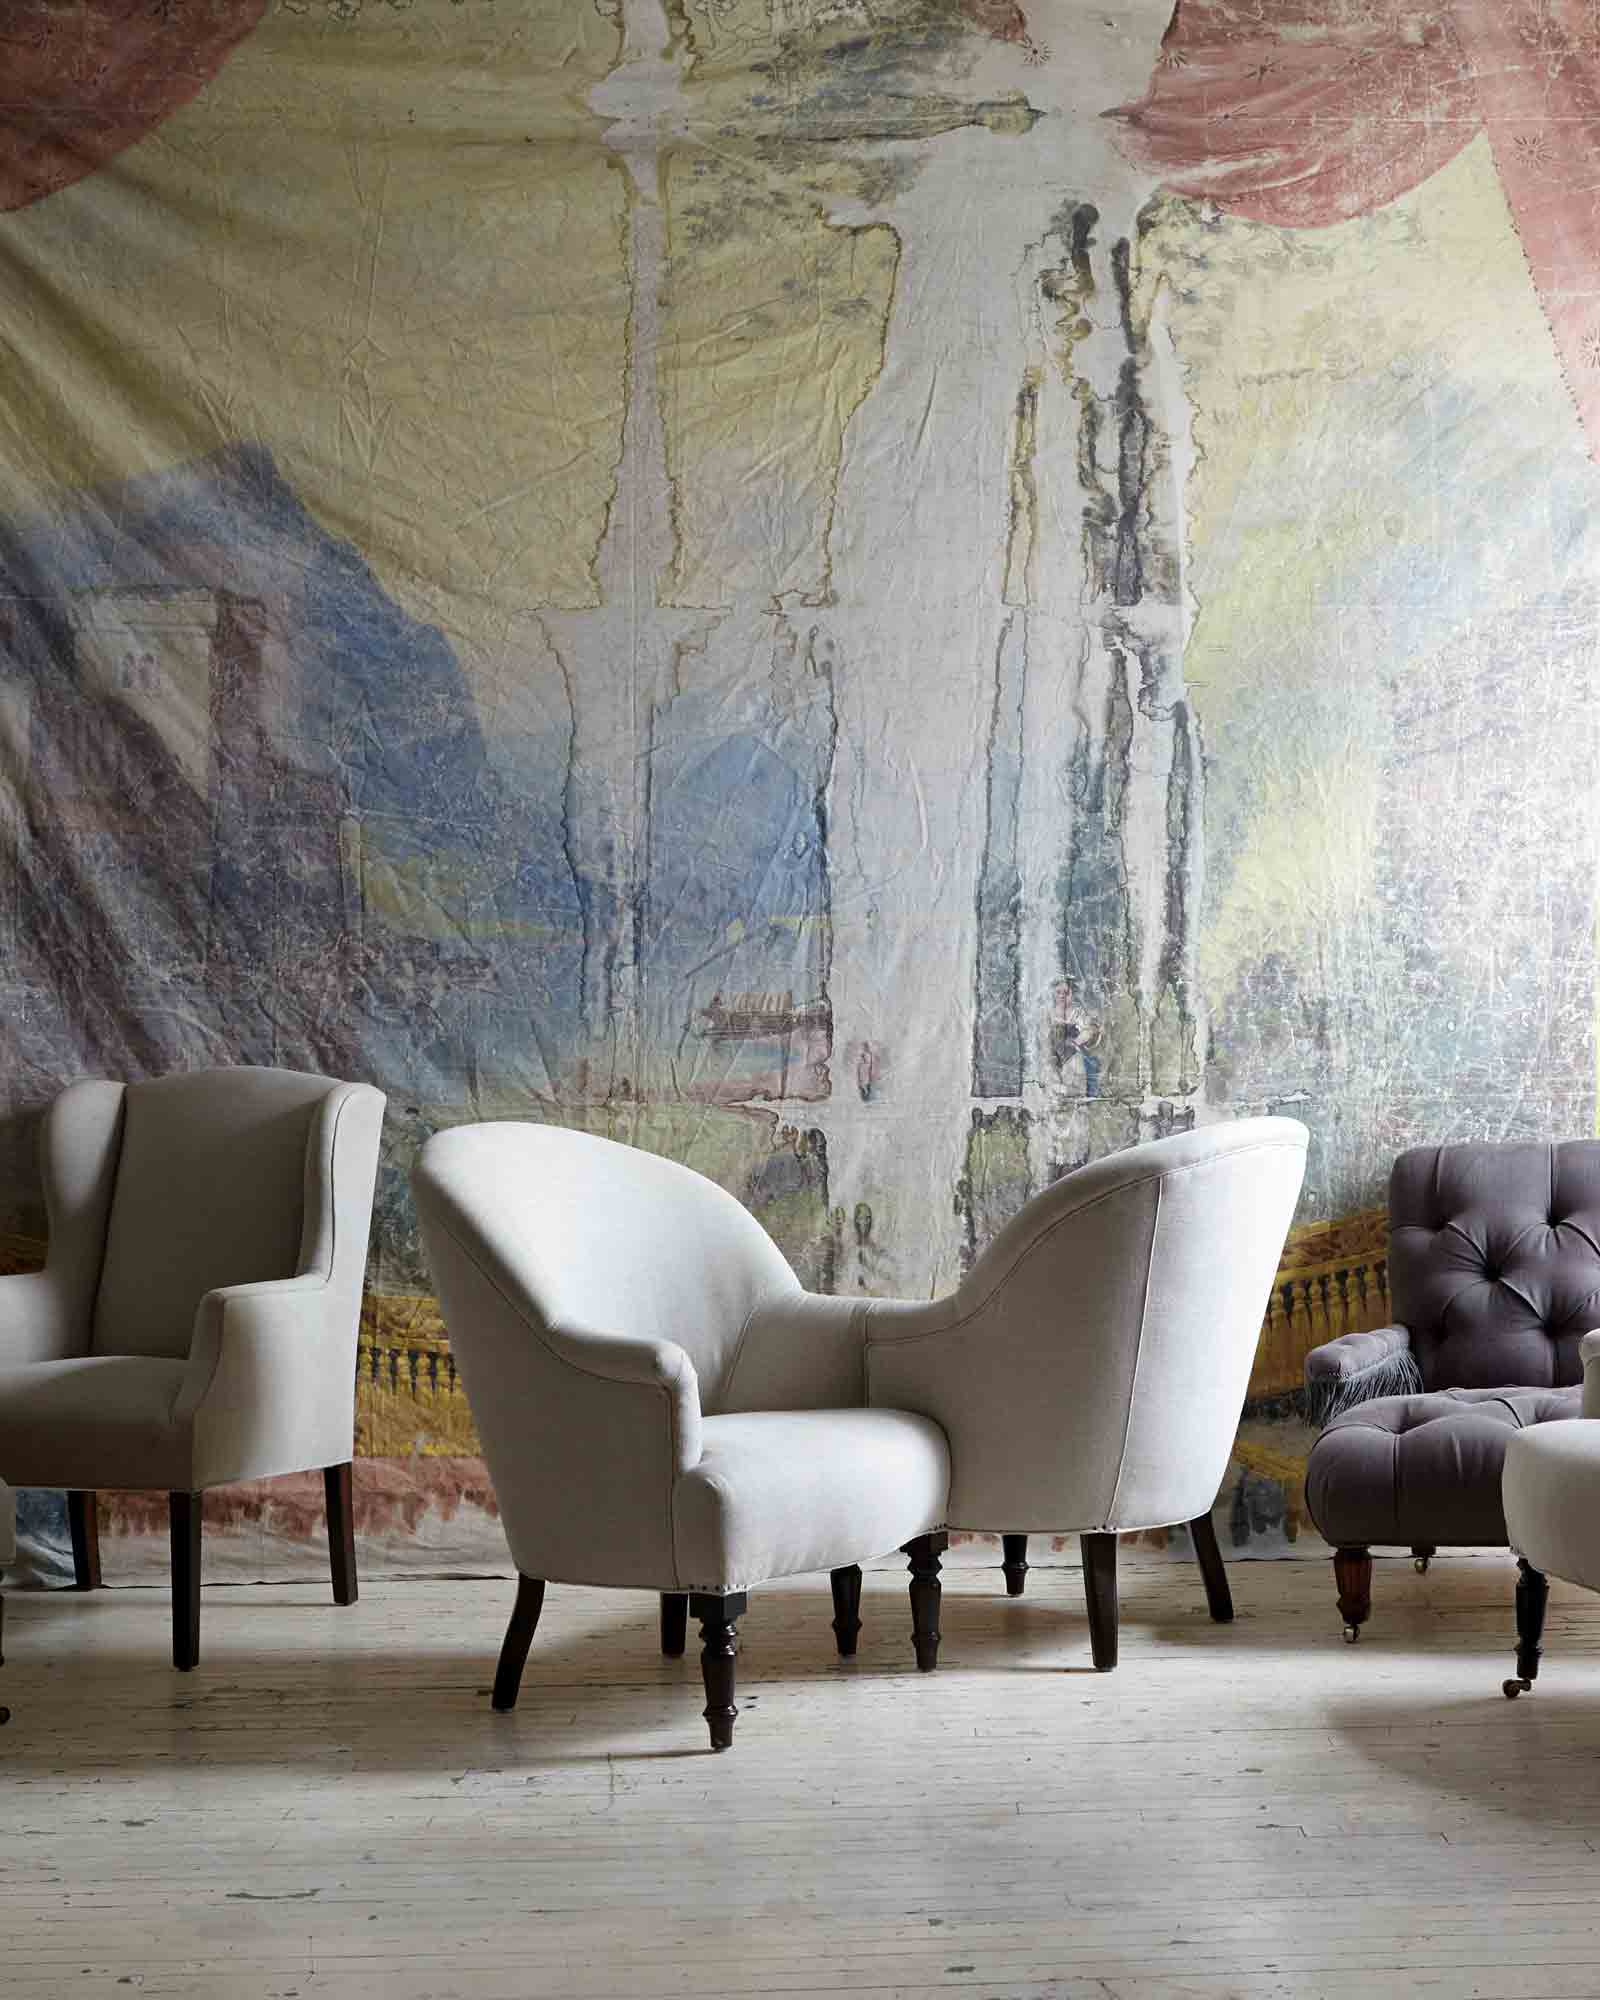  Tete-a-Tete椅子在复古亚麻旁边的各种椅子. 背景是一幅巨大的古董画，占据了整面墙. 